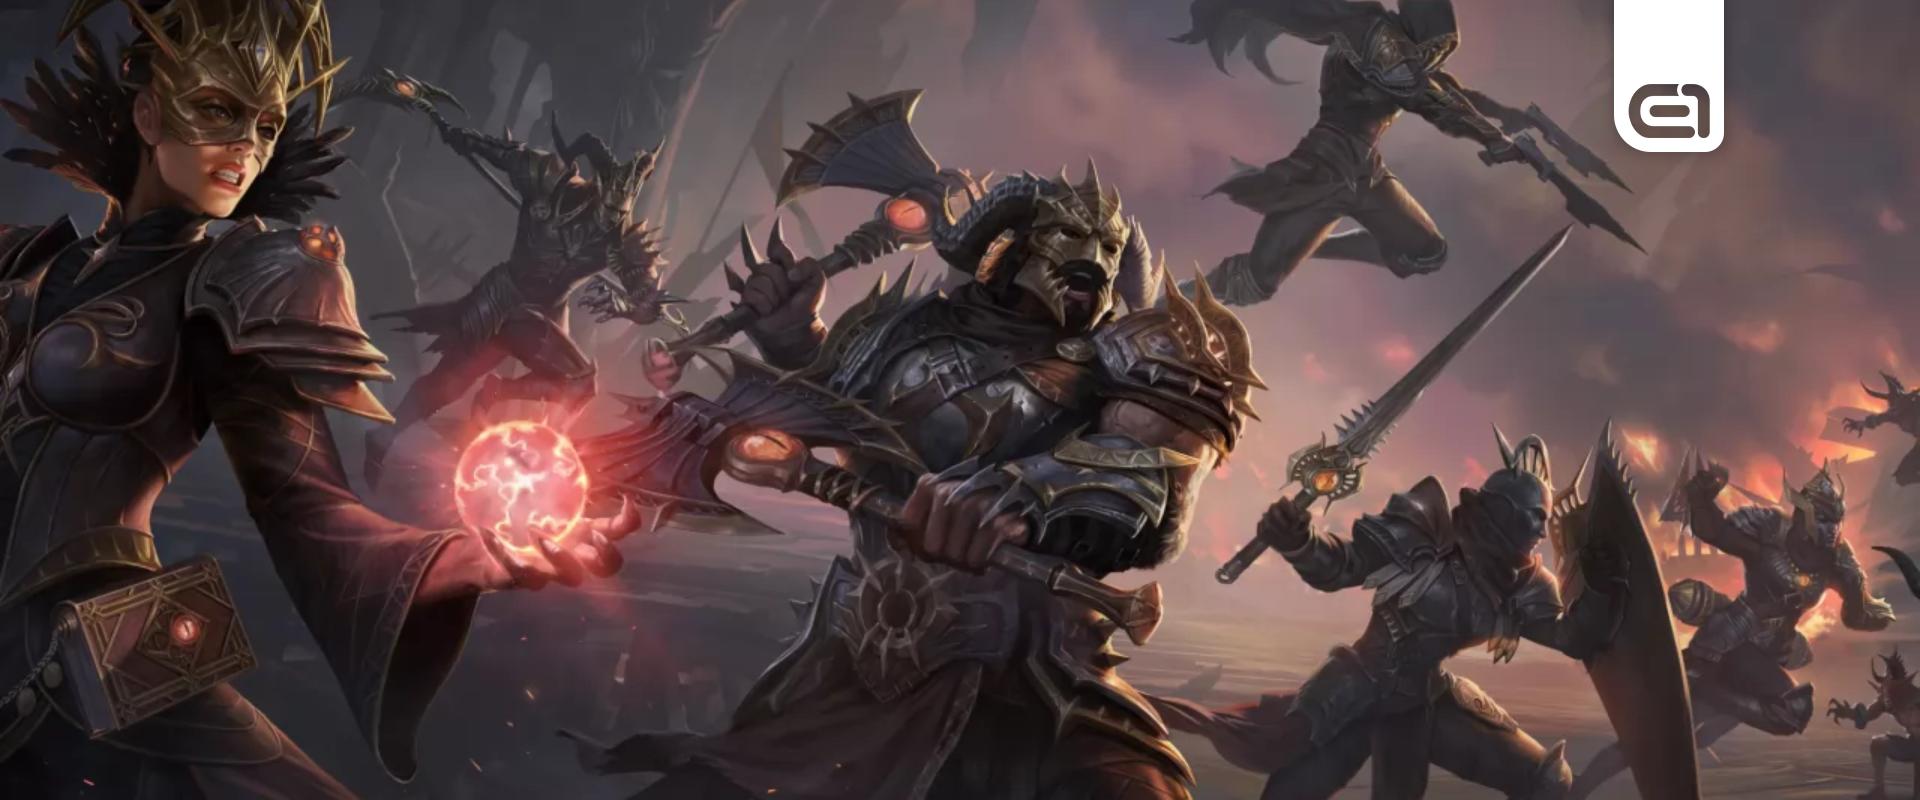 Nagyot megy a Diablo IV, a Blizzard történetében a legjobb kezdőhónapot hozta a játék